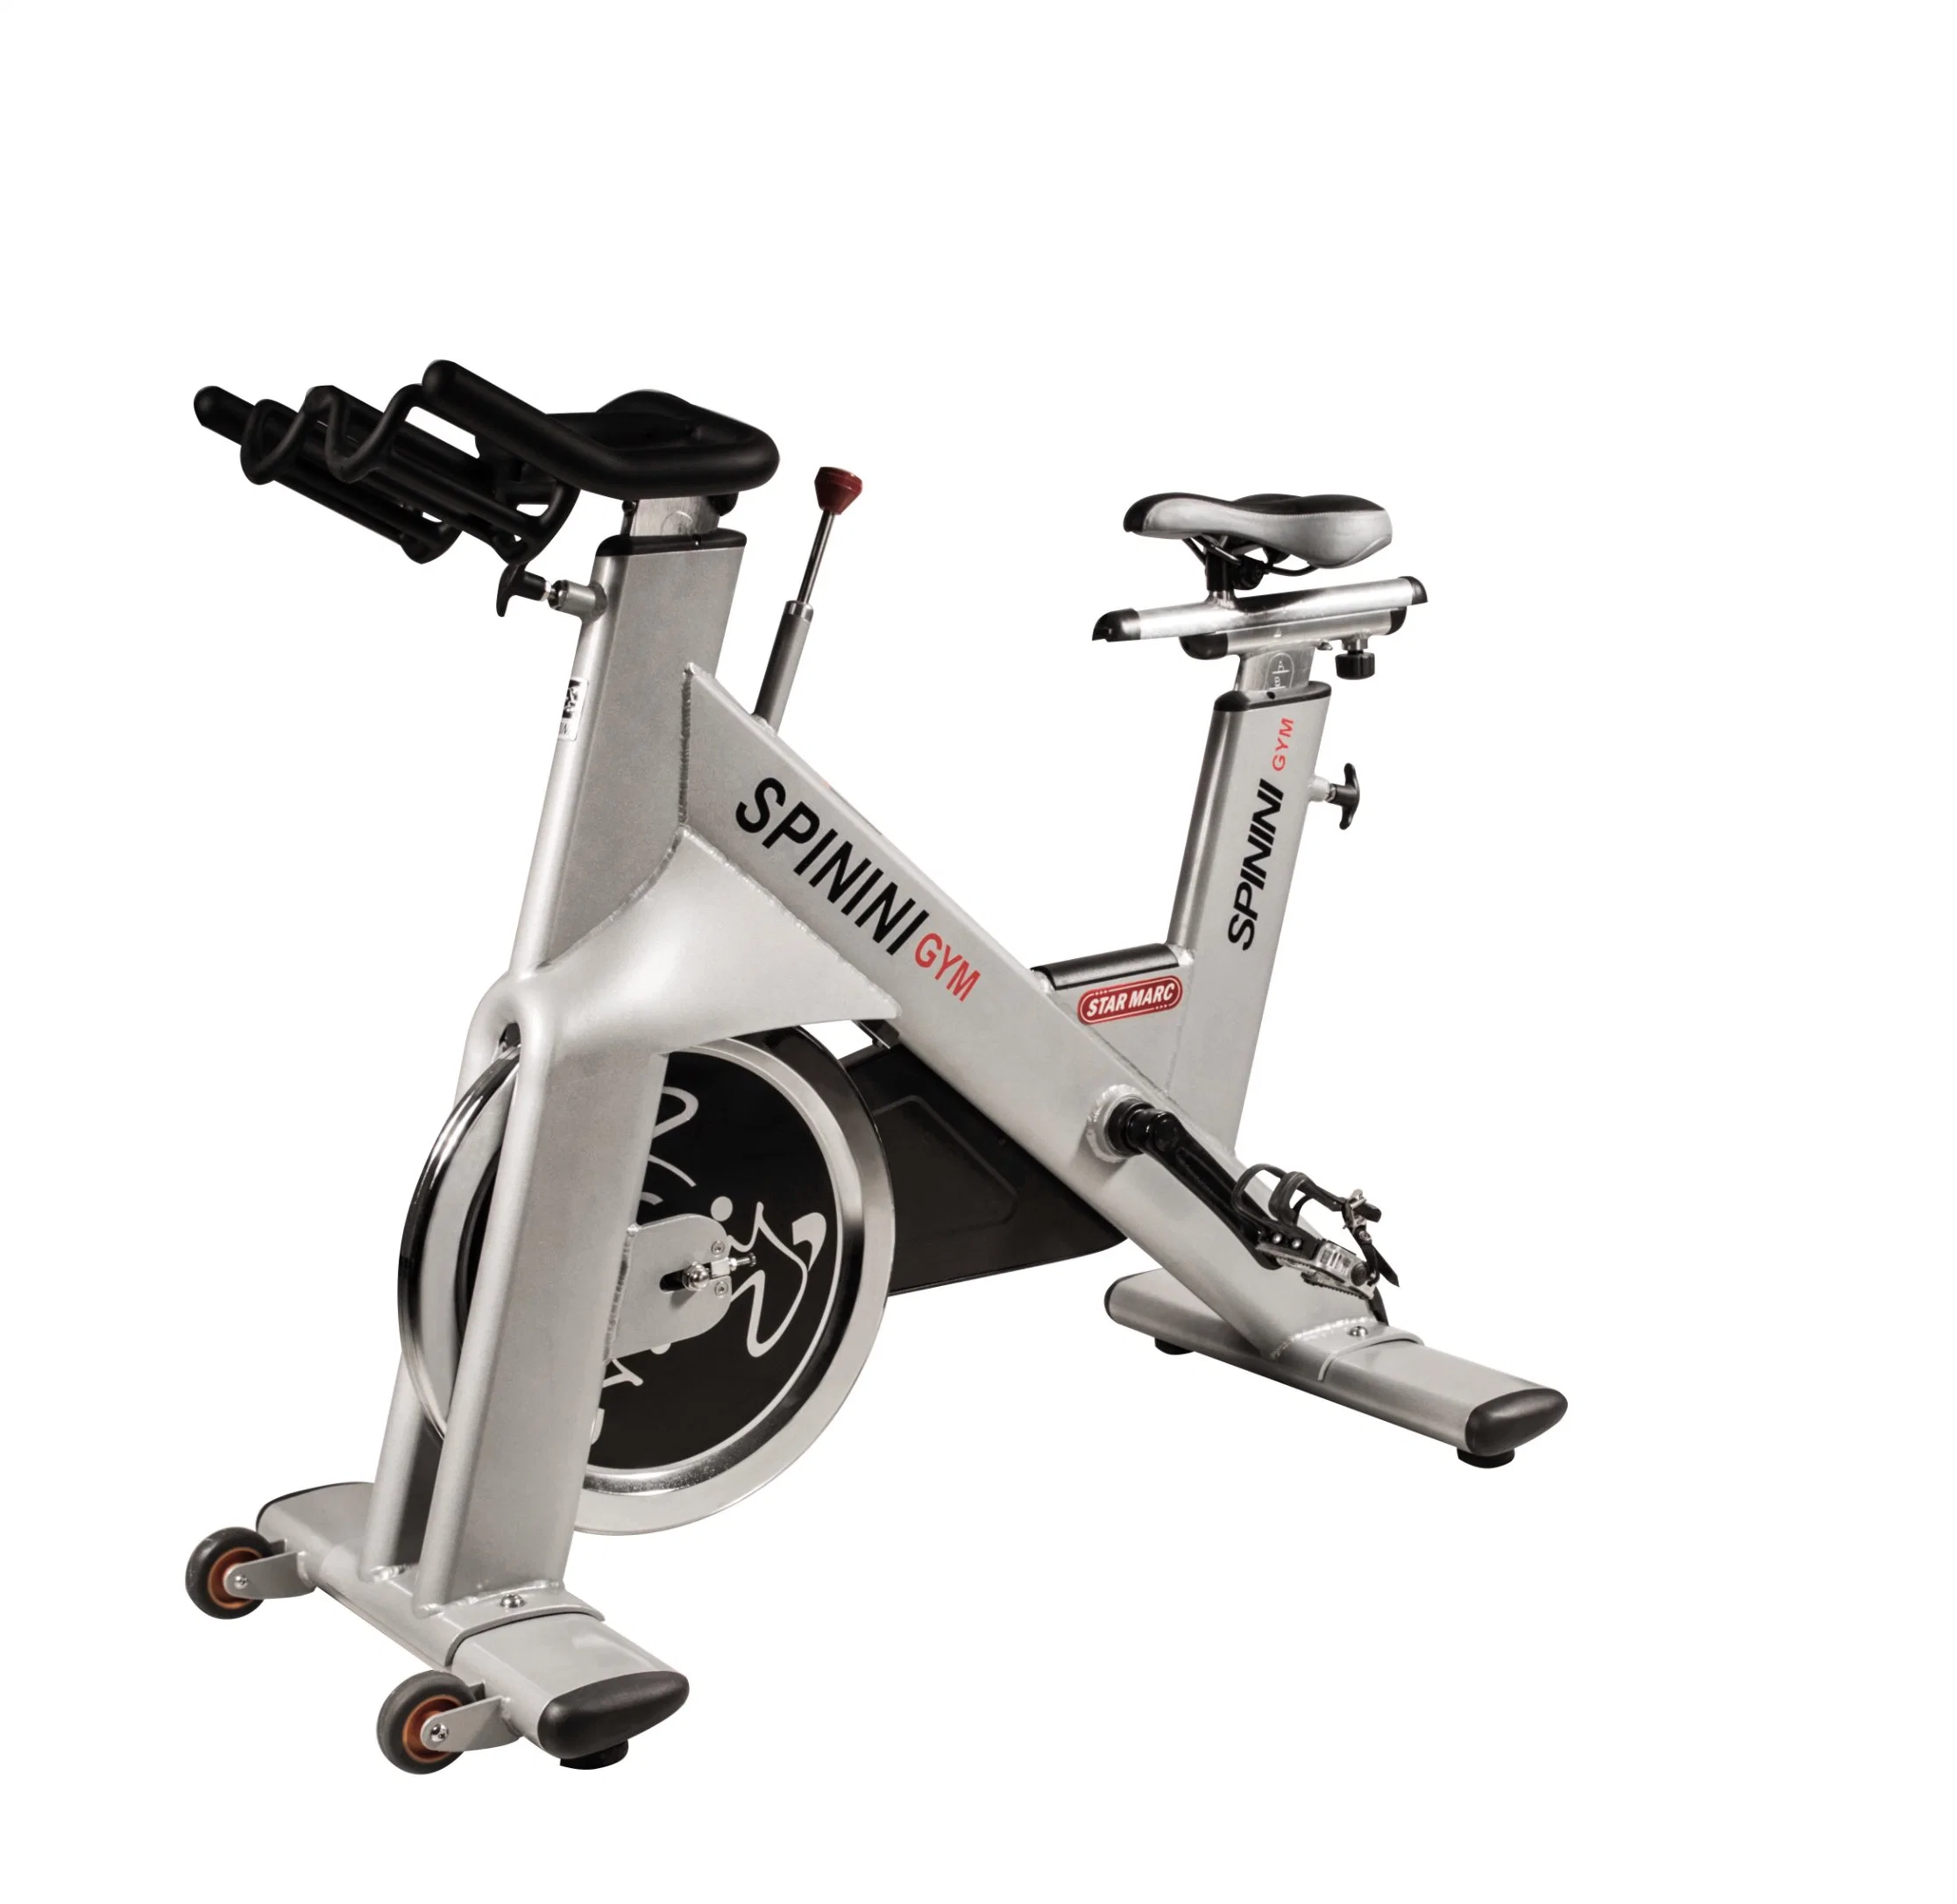 Leekon New Design Life Fitness Exercise Bike, Home Gym Equipment Commercial Magnetic Spinning Bike